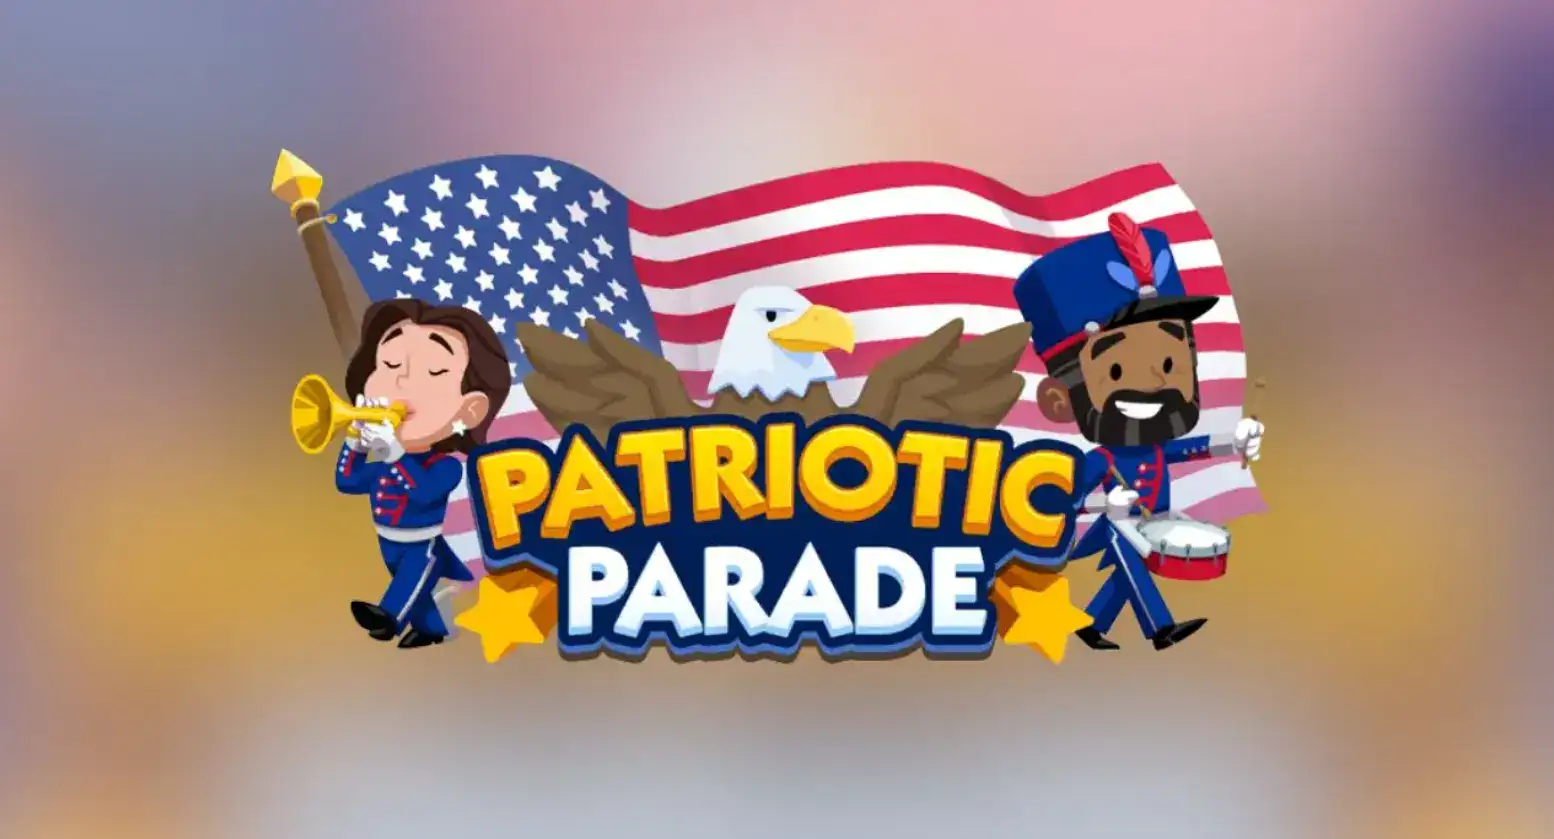 monopoly go patriotic parade rewards and milestones